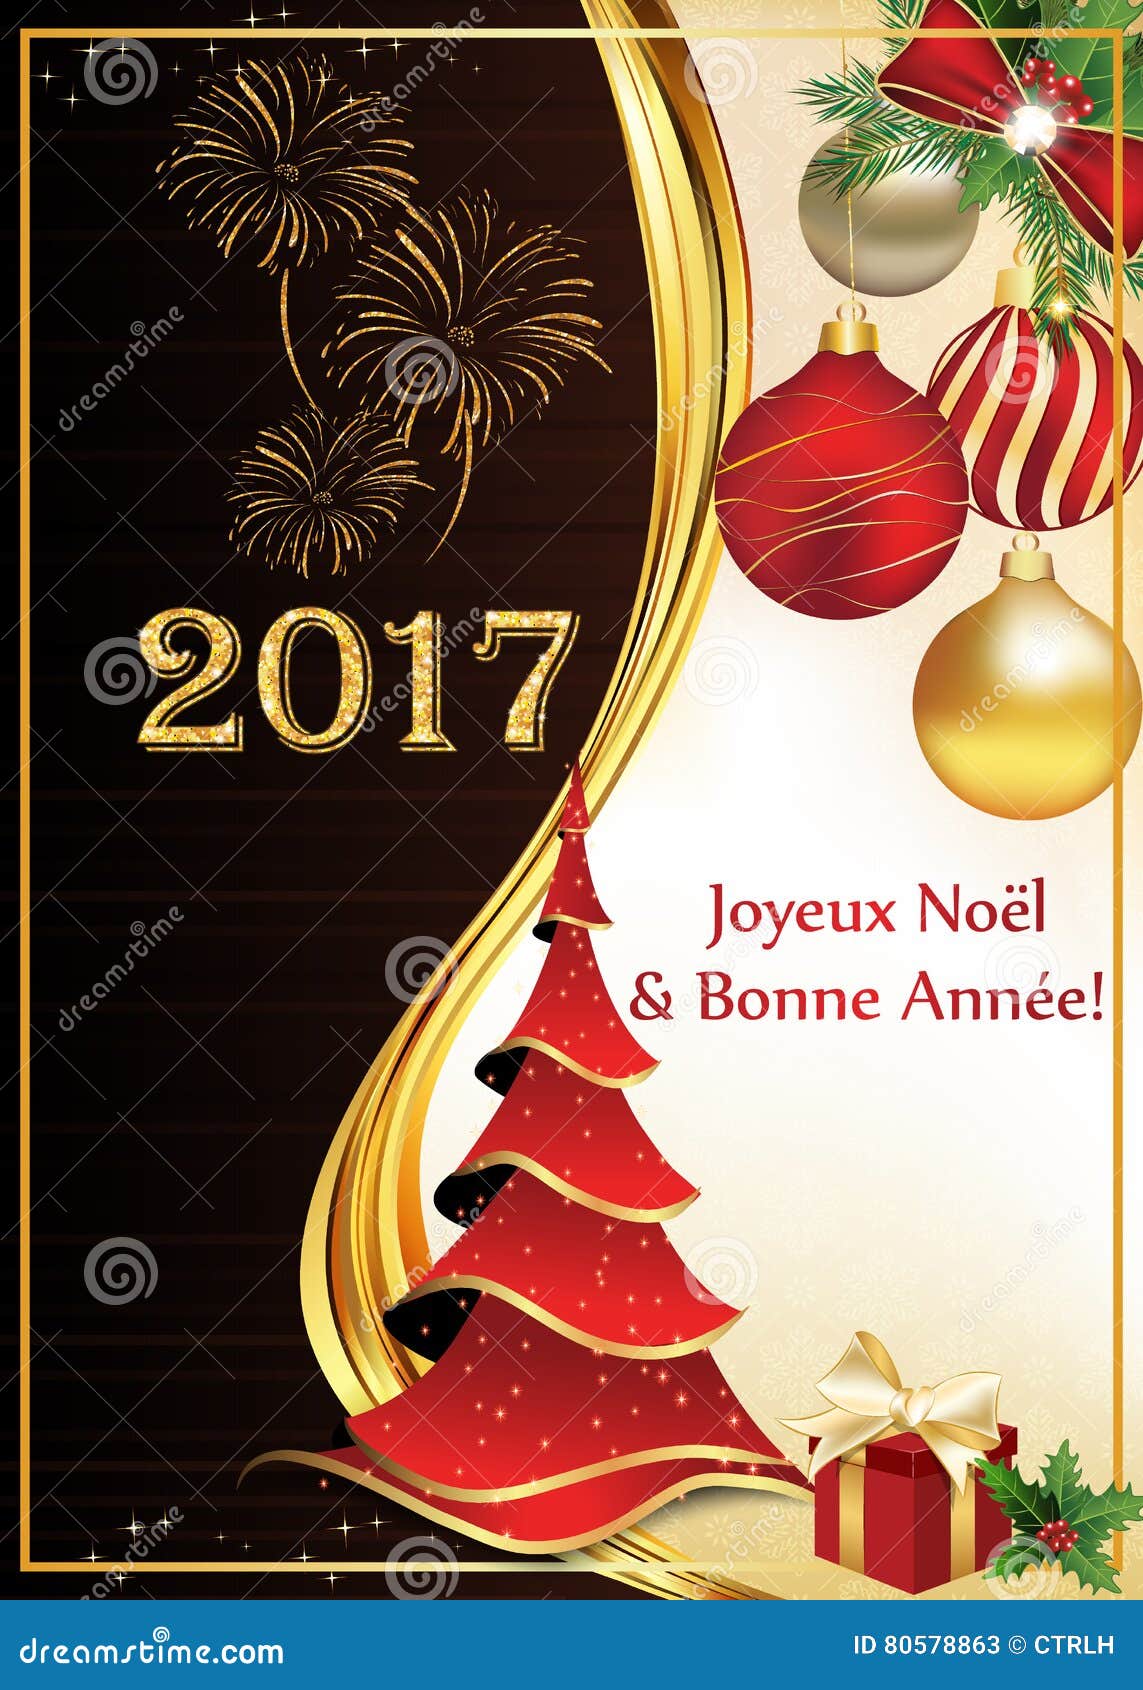 Buon Natale Francia.Cartolina D Auguri Del Buon Anno E Di Buon Natale In Francese Illustrazione Di Stock Illustrazione Di Bacca Francese 80578863